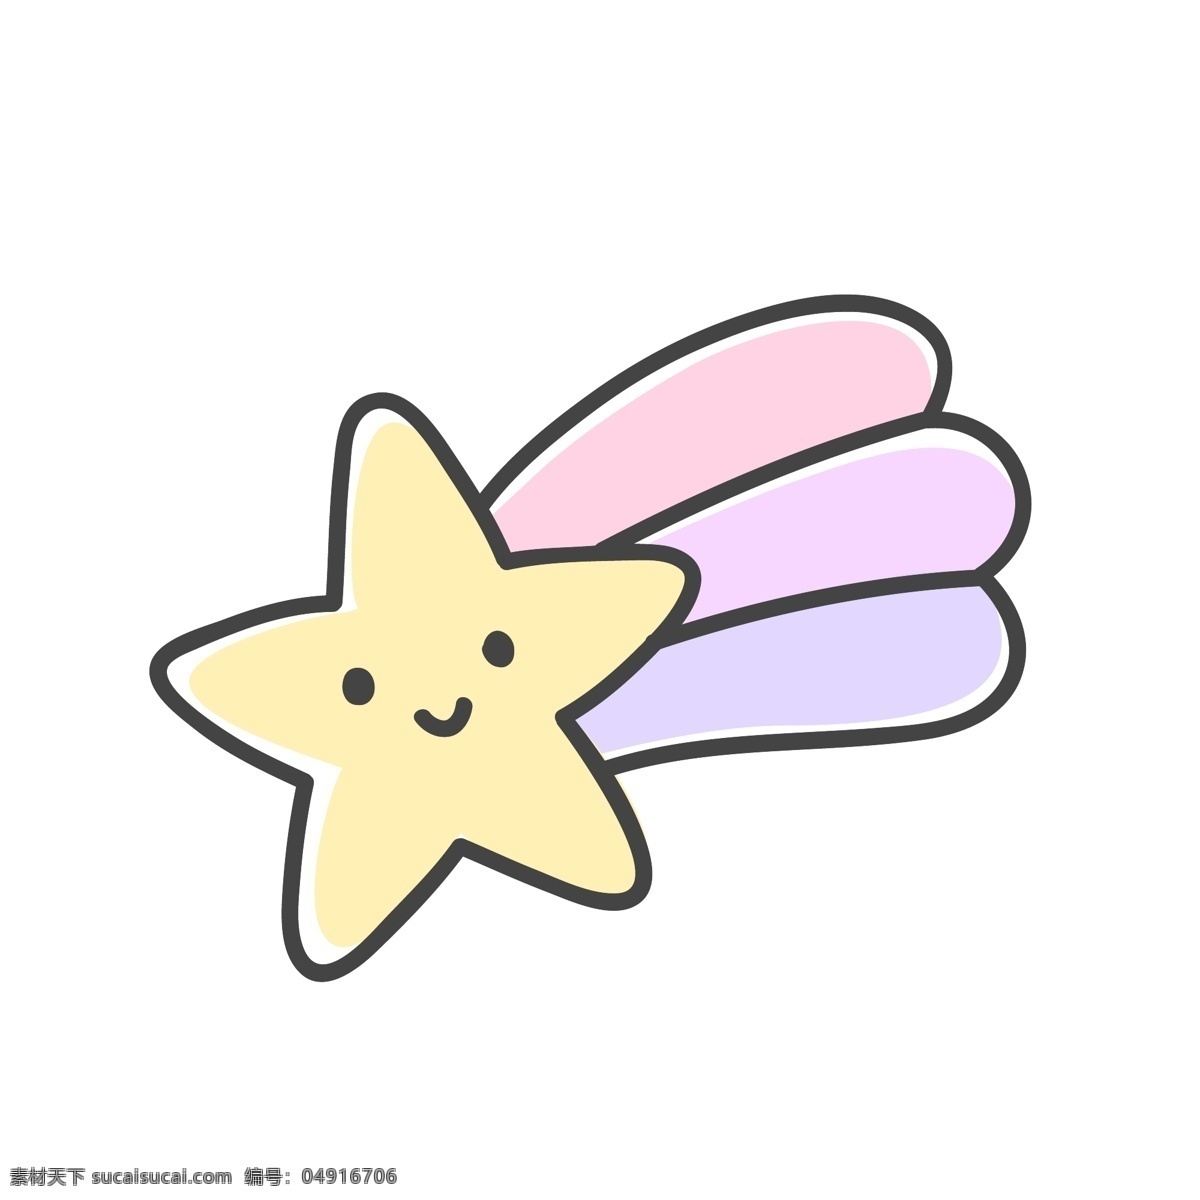 手绘 卡通 彩虹 星星 矢量 粉黄色 粉紫色 可爱 平面素材 设计素材 矢量素材 童话